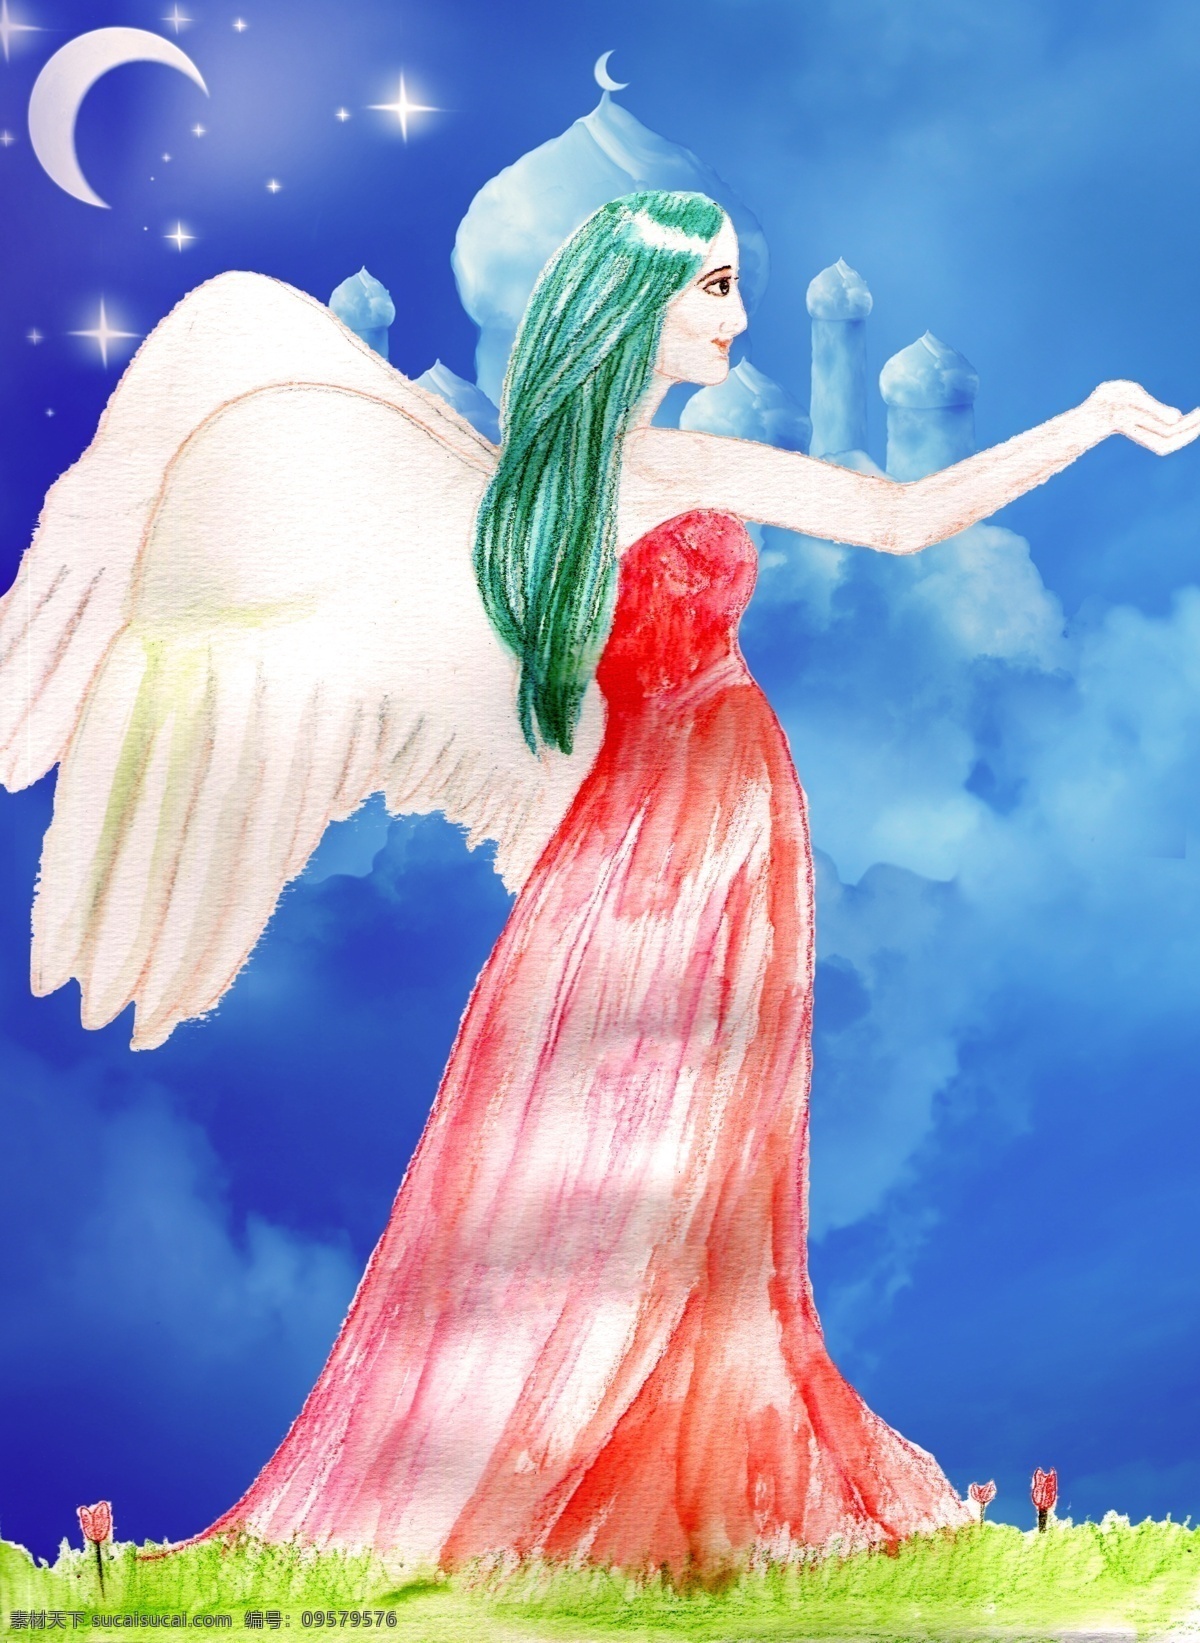 守护天使 守护 天使 绿头发 白色翅膀 星月 童话 仙女 纯手绘 彩色铅笔 水彩 蓝色